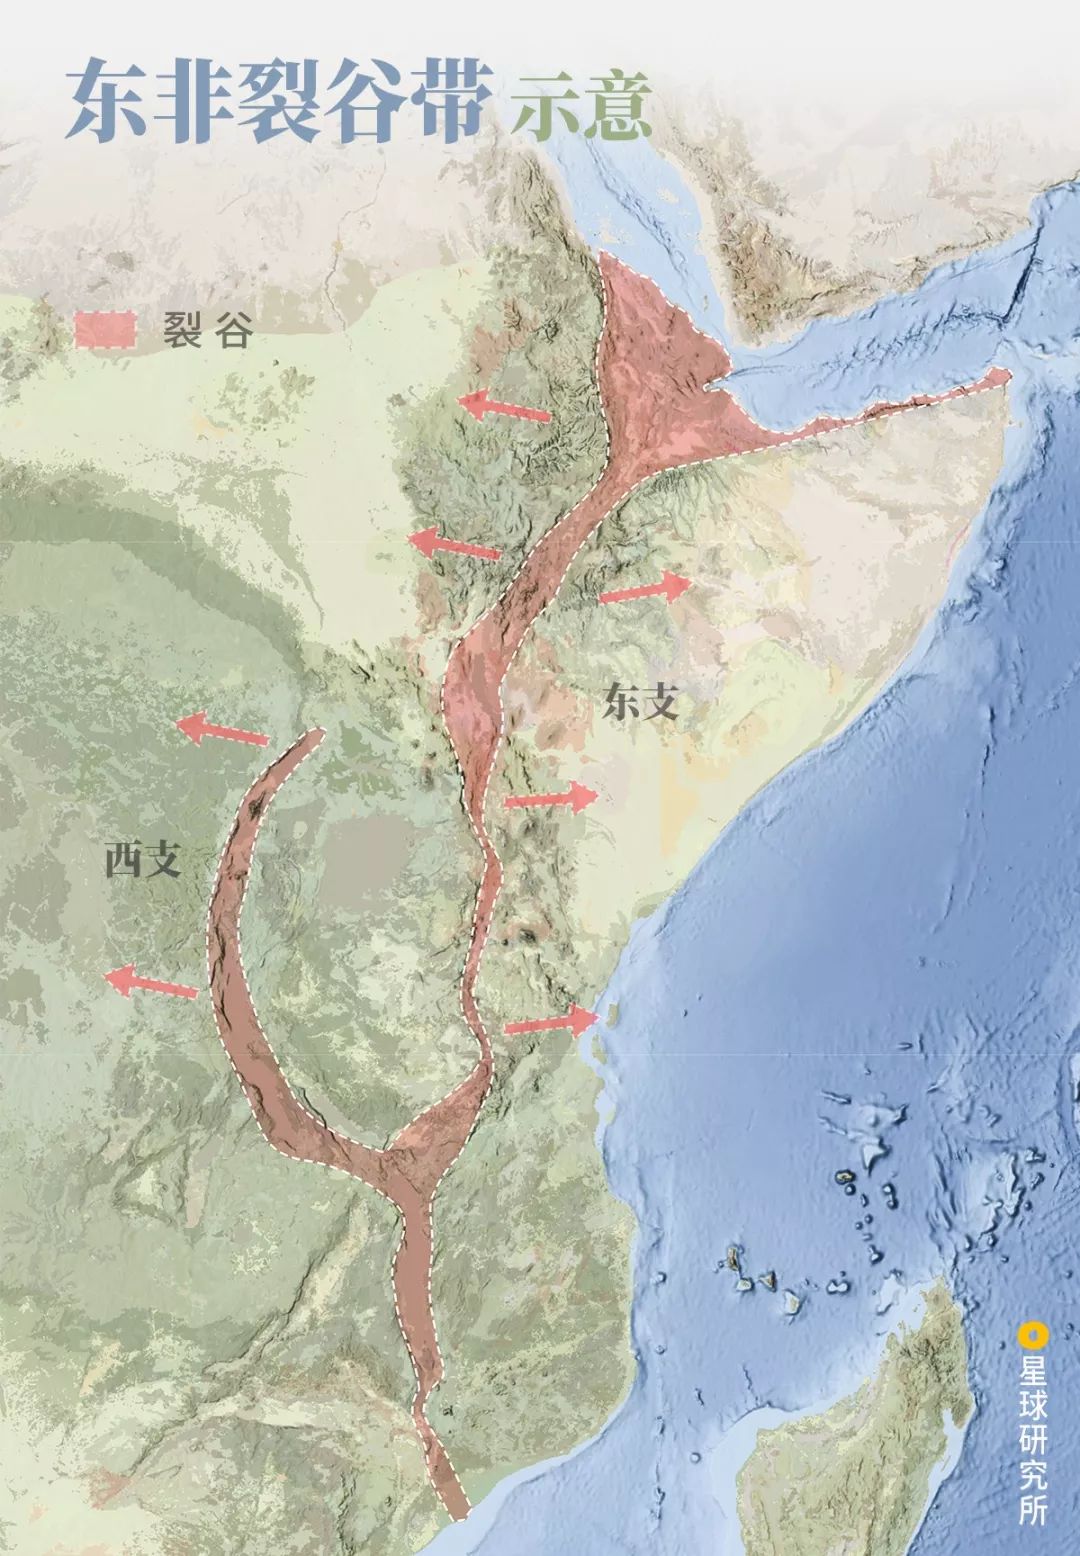 其实近距离来看,东非大裂谷的伤口并非万丈深渊,因为这个裂谷实在太